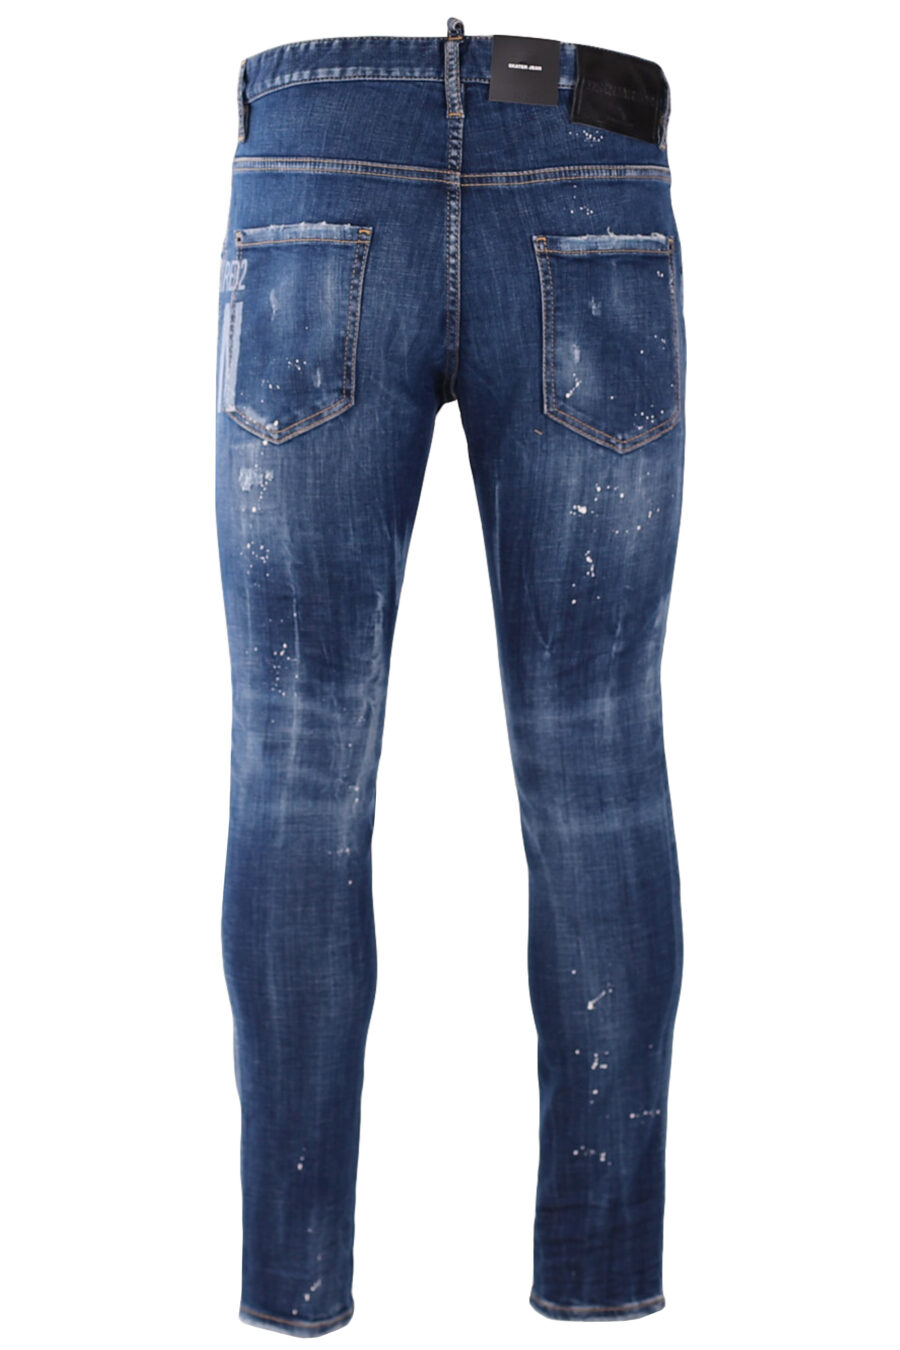 Pantalón vaquero azul "skater jean" con logo "icon" y pintura blanca - IMG 9463